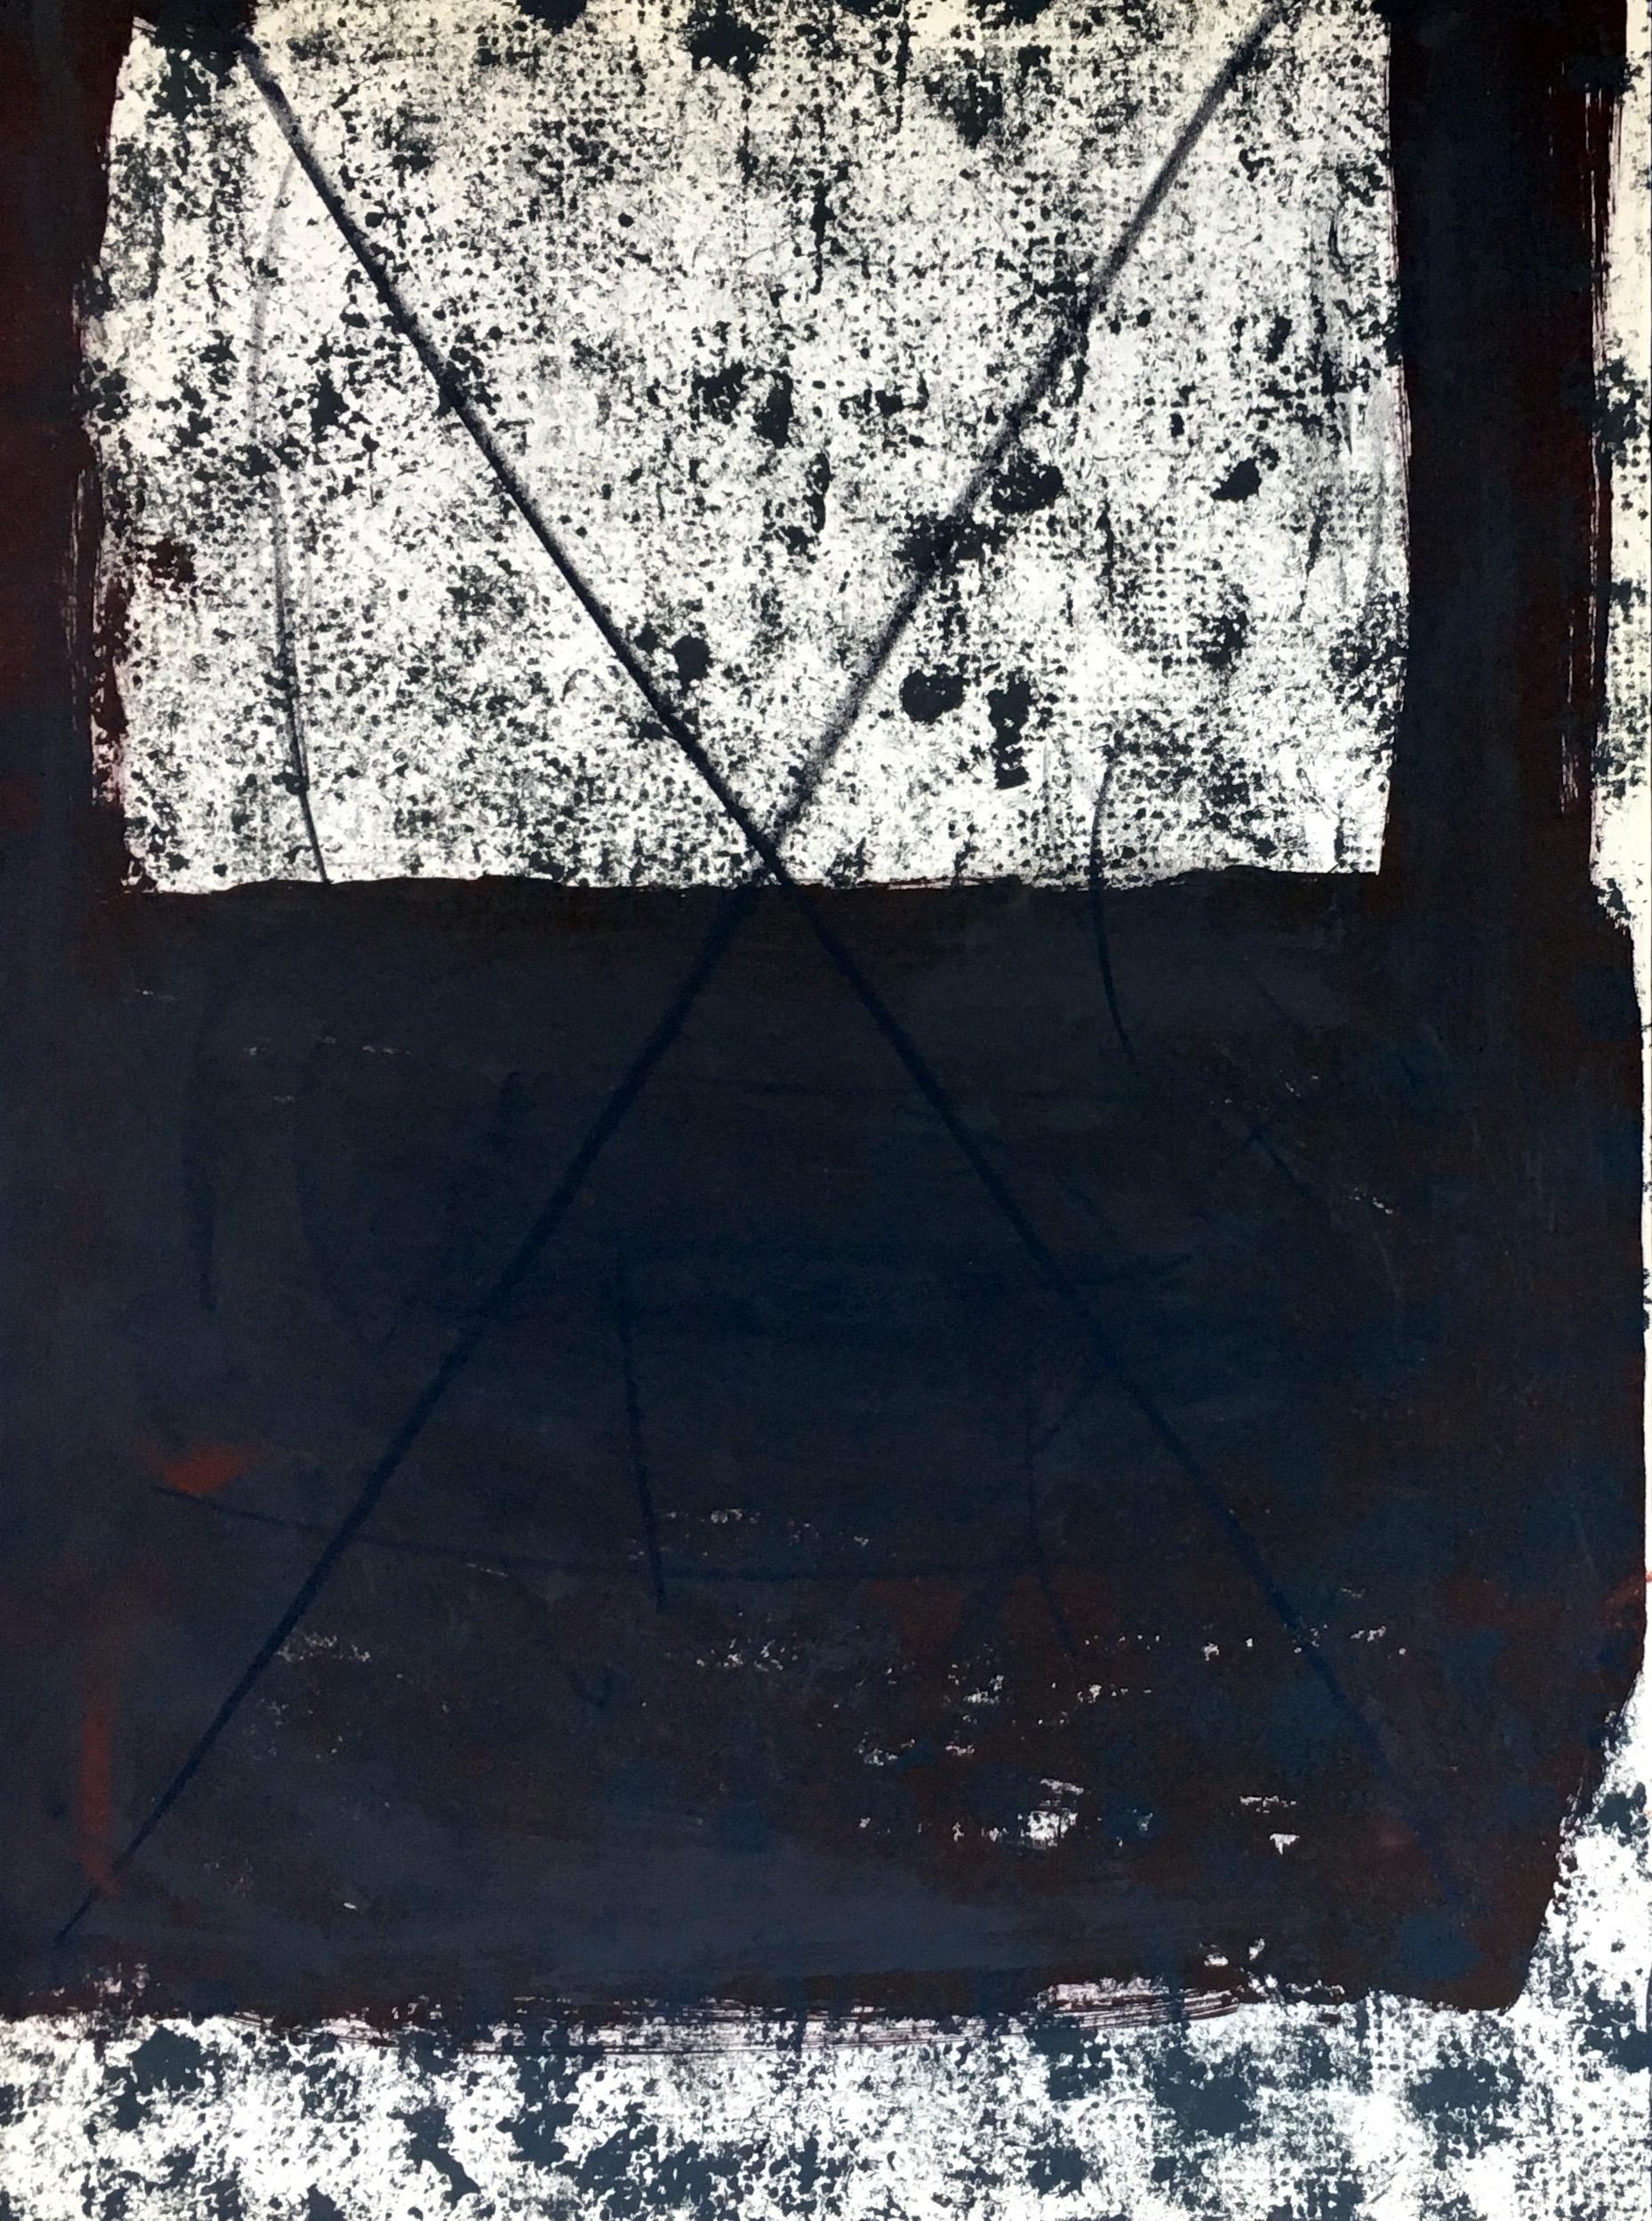 Antoni Tàpies Lithographie 1967 aus Derriere Le Miroir:

Farblithographie; 1967.
11 x 15 Zoll.
Insgesamt sehr guter Vintage-Zustand.
Unsigniert aus einer Auflage von unbekannt. Wird ungerahmt verkauft.

Antoni Tàpies
Im Laufe seiner Karriere als